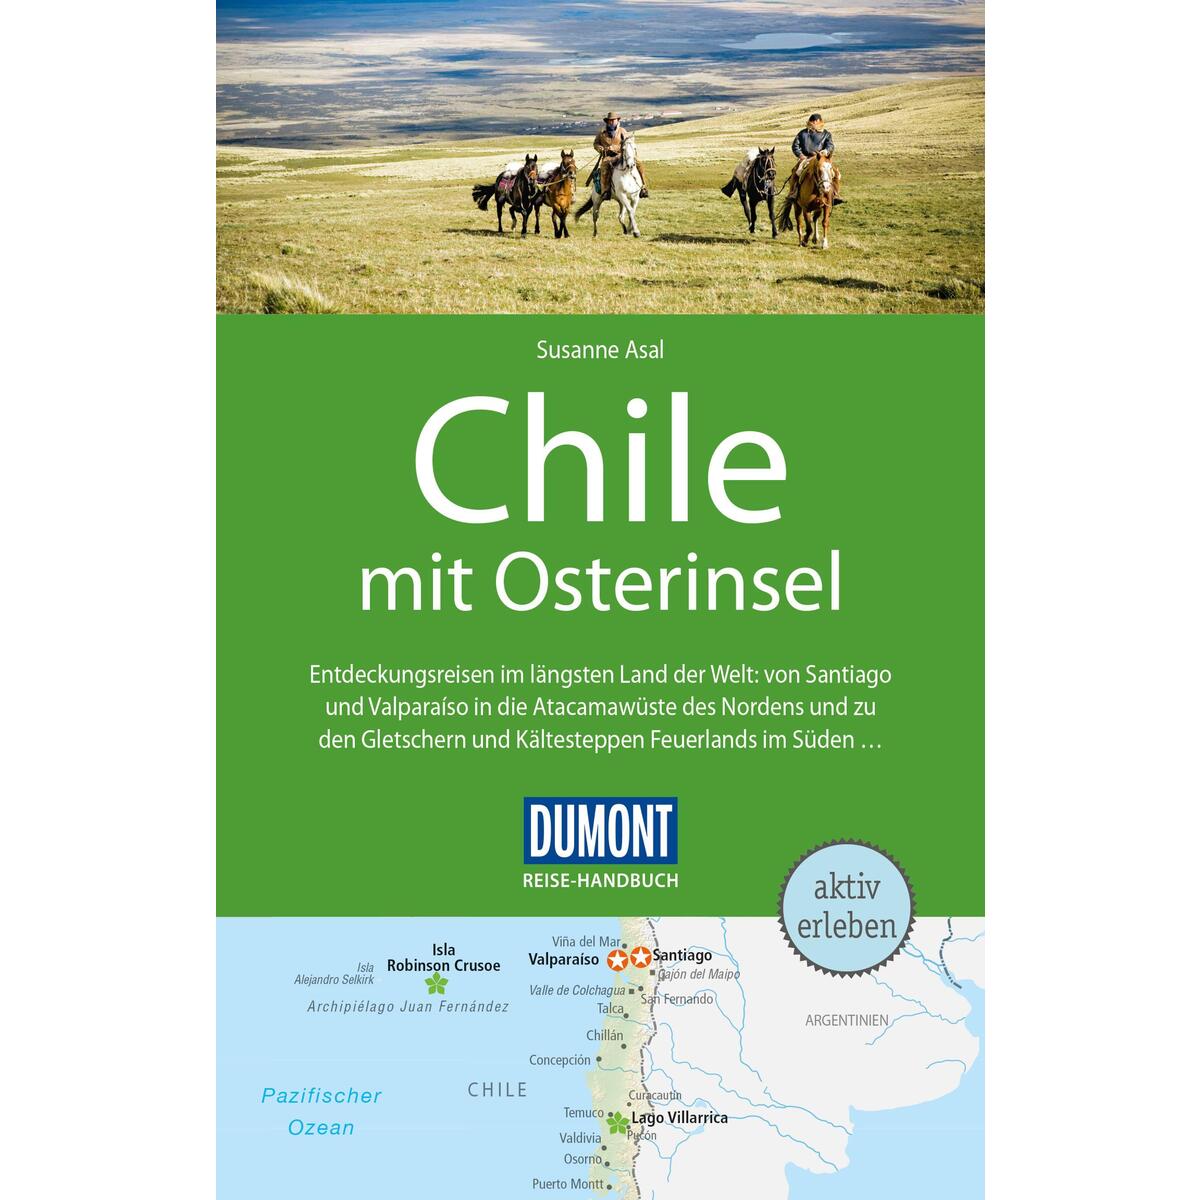 DuMont Reise-Handbuch Reiseführer Chile mit Osterinsel von Dumont Reise Vlg GmbH + C